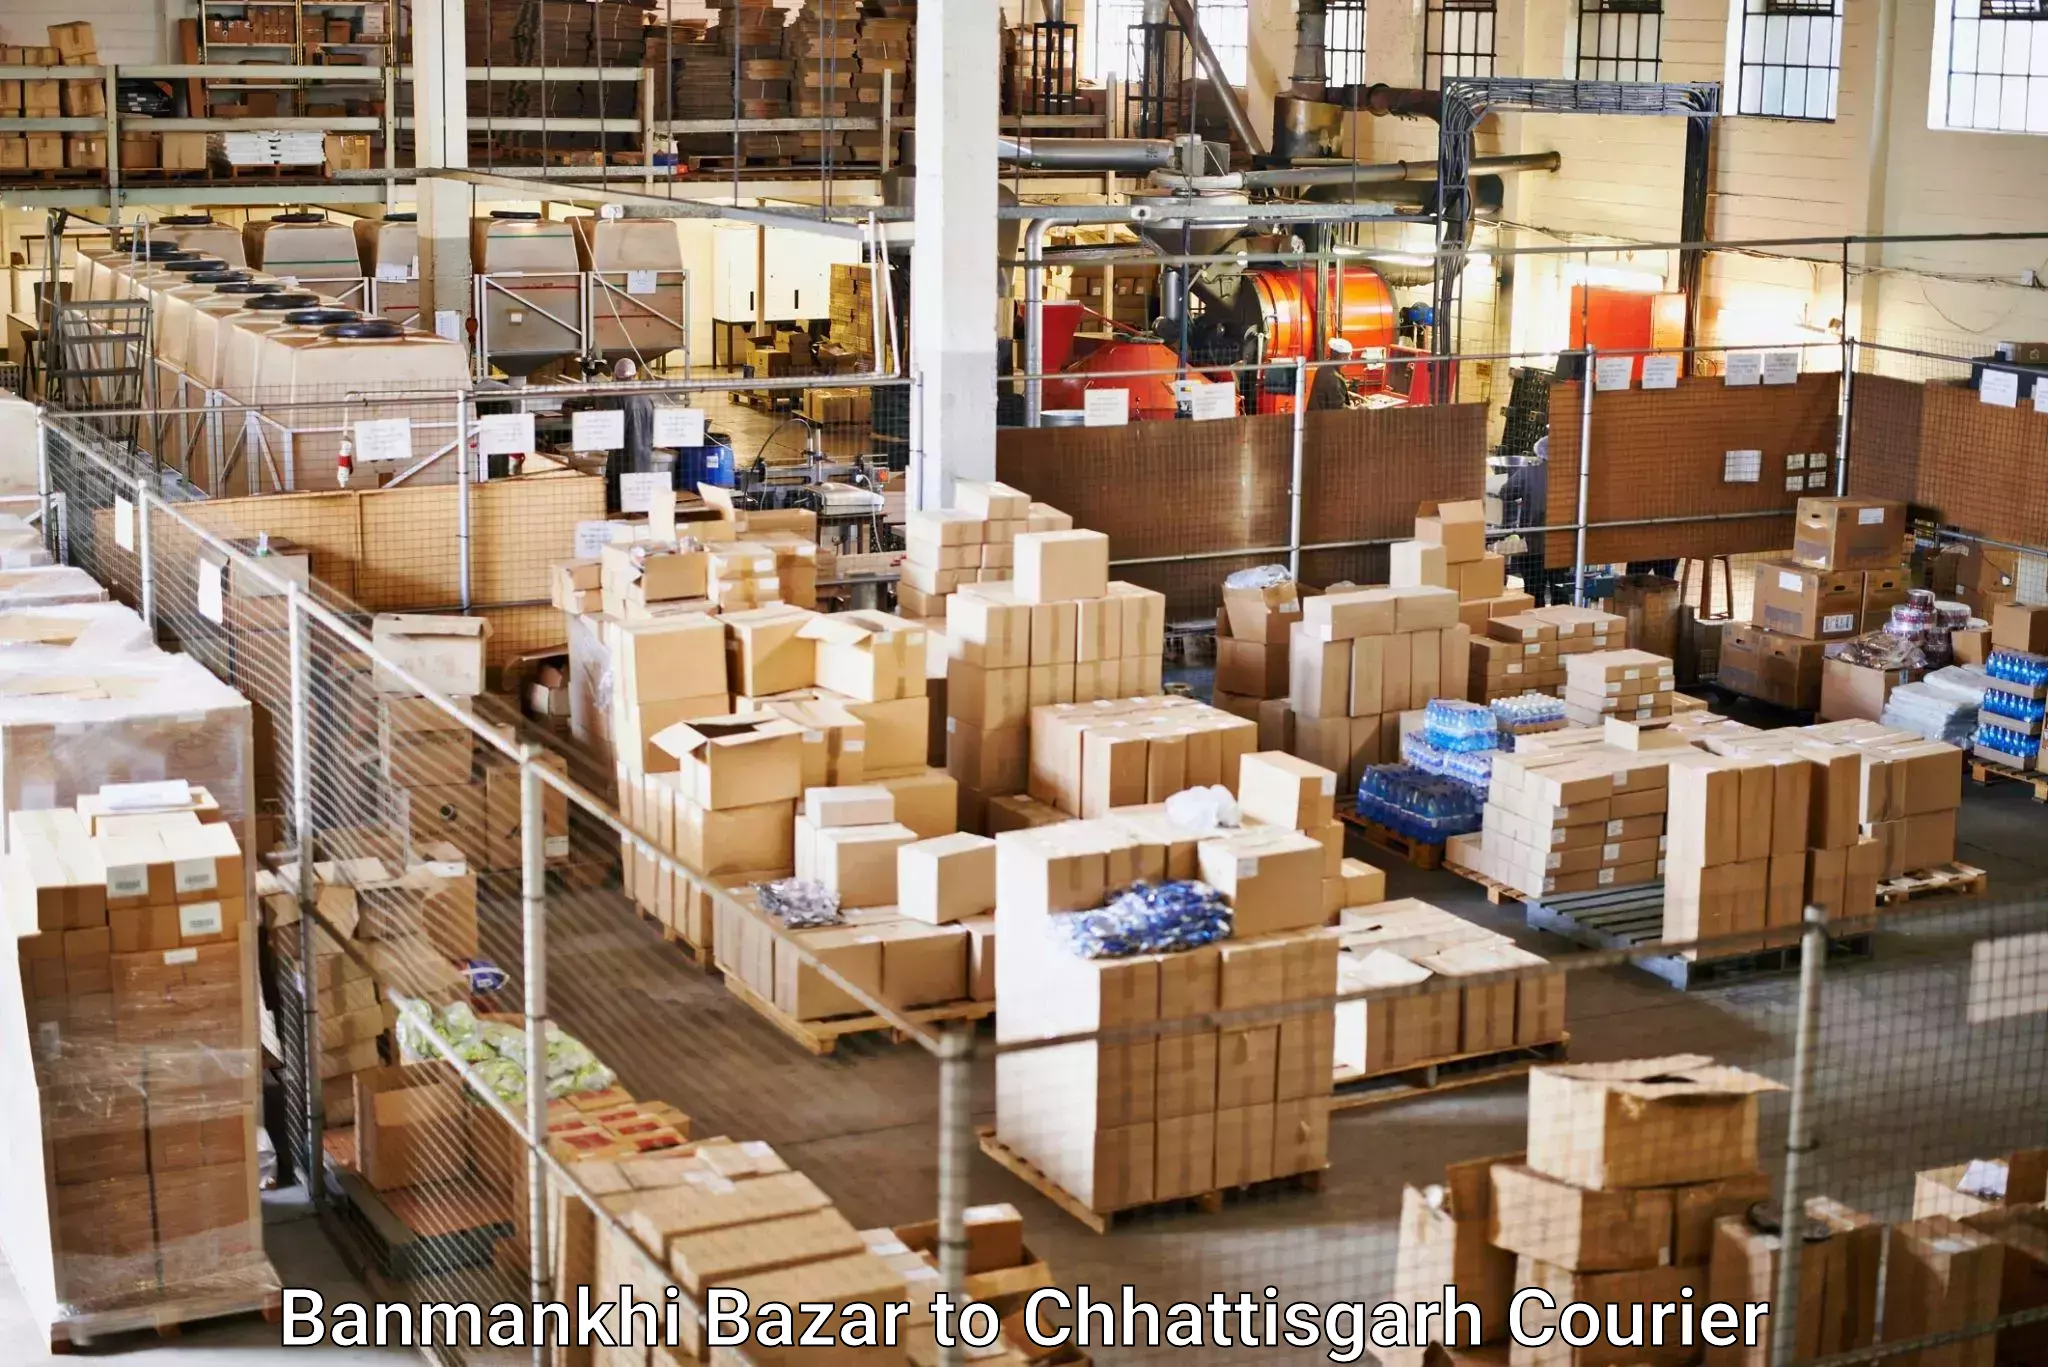 Reliable parcel services Banmankhi Bazar to Chhattisgarh